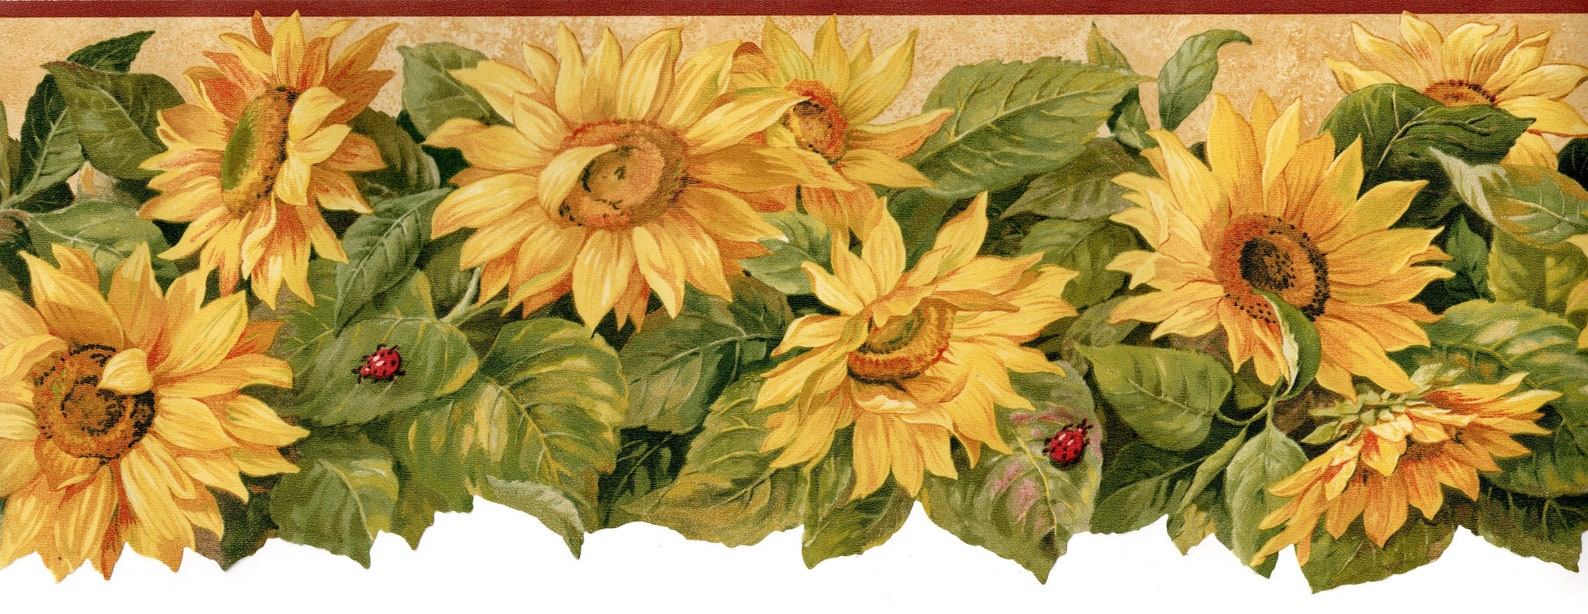 Sunflower Wallpaper Border Scalloped Sunflower Wallpaper | Etsy